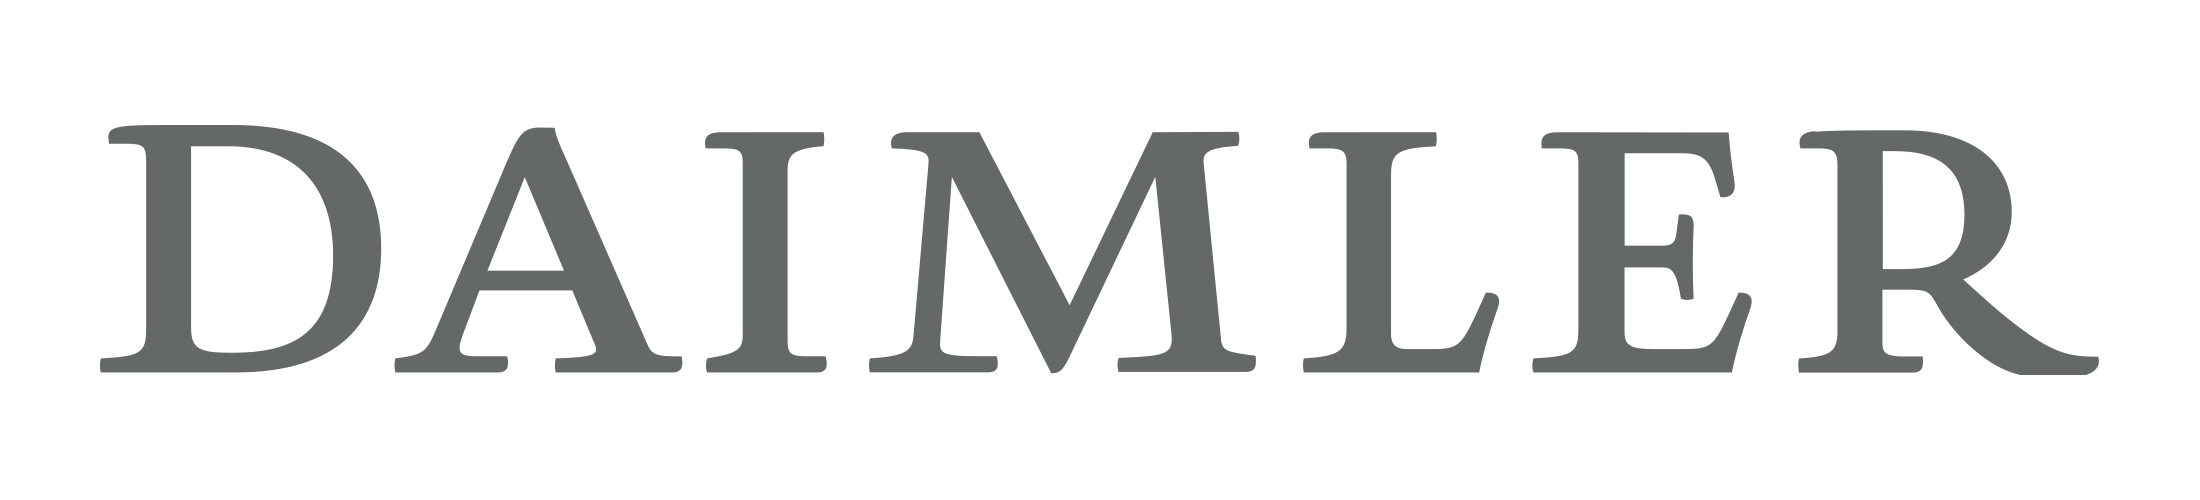 Daimler-logo